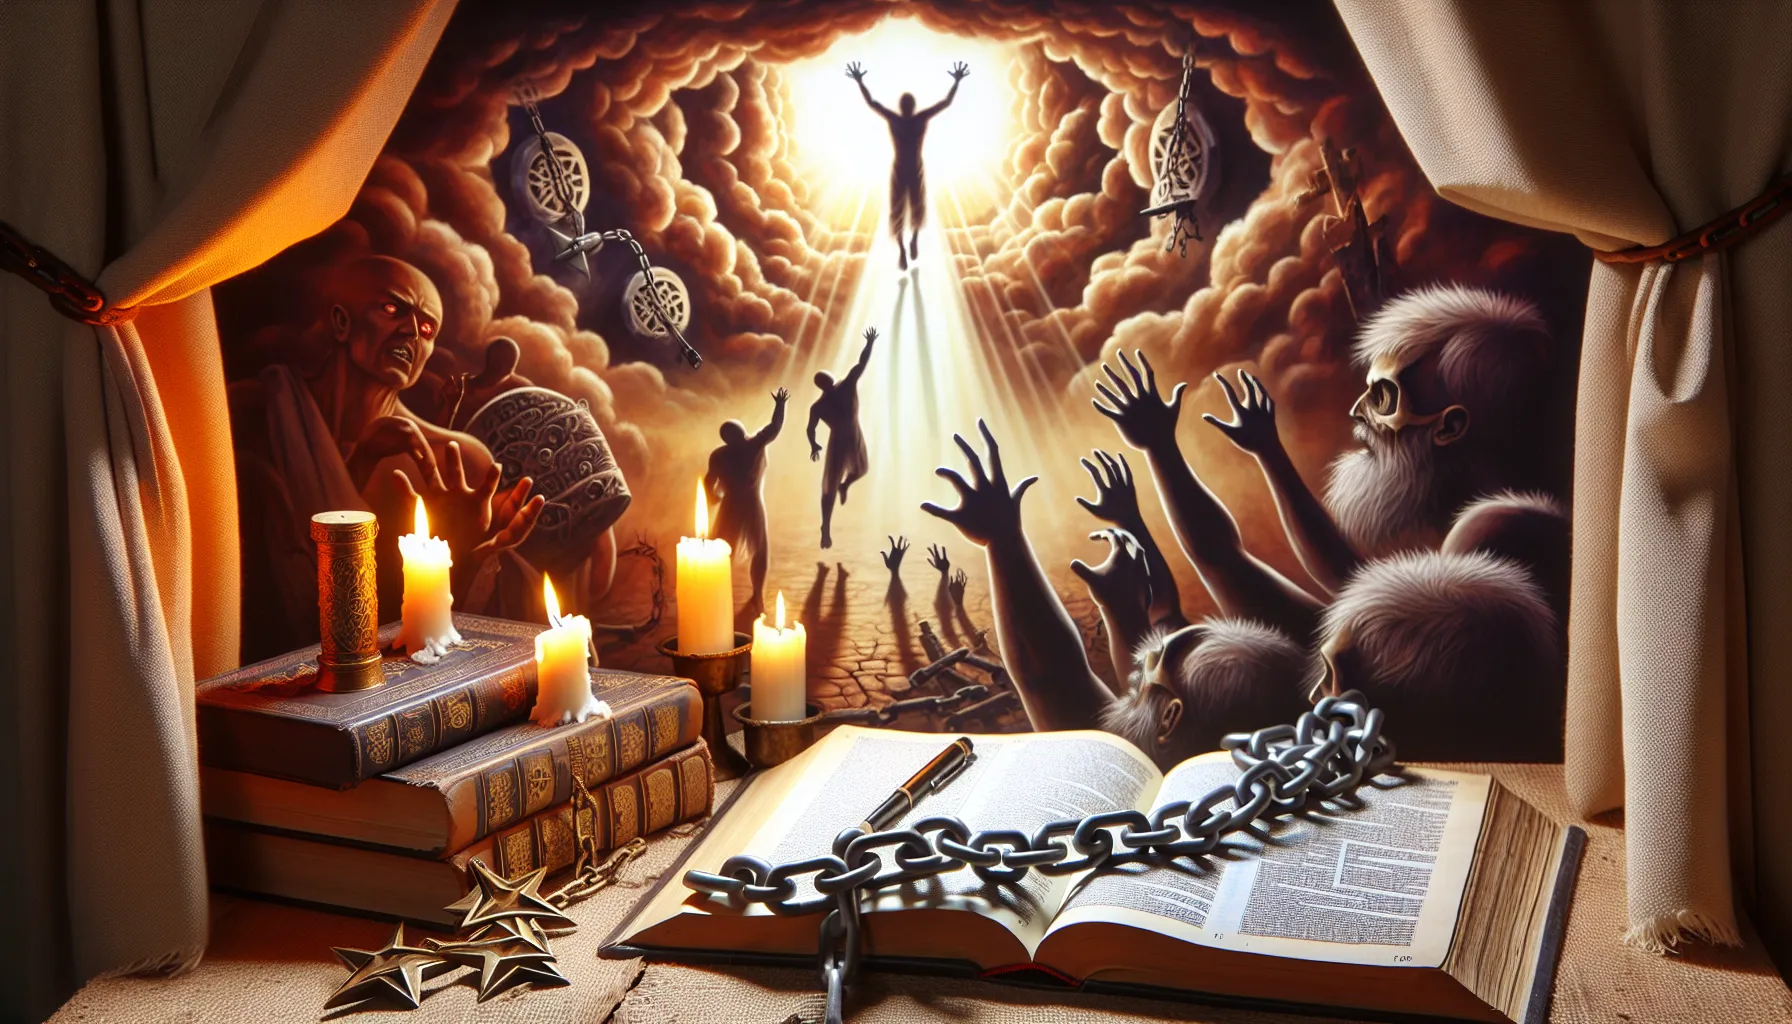 Imagen que representa enseñanzas bíblicas acerca de la liberación espiritual y la lucha contra la opresión demoníaca.